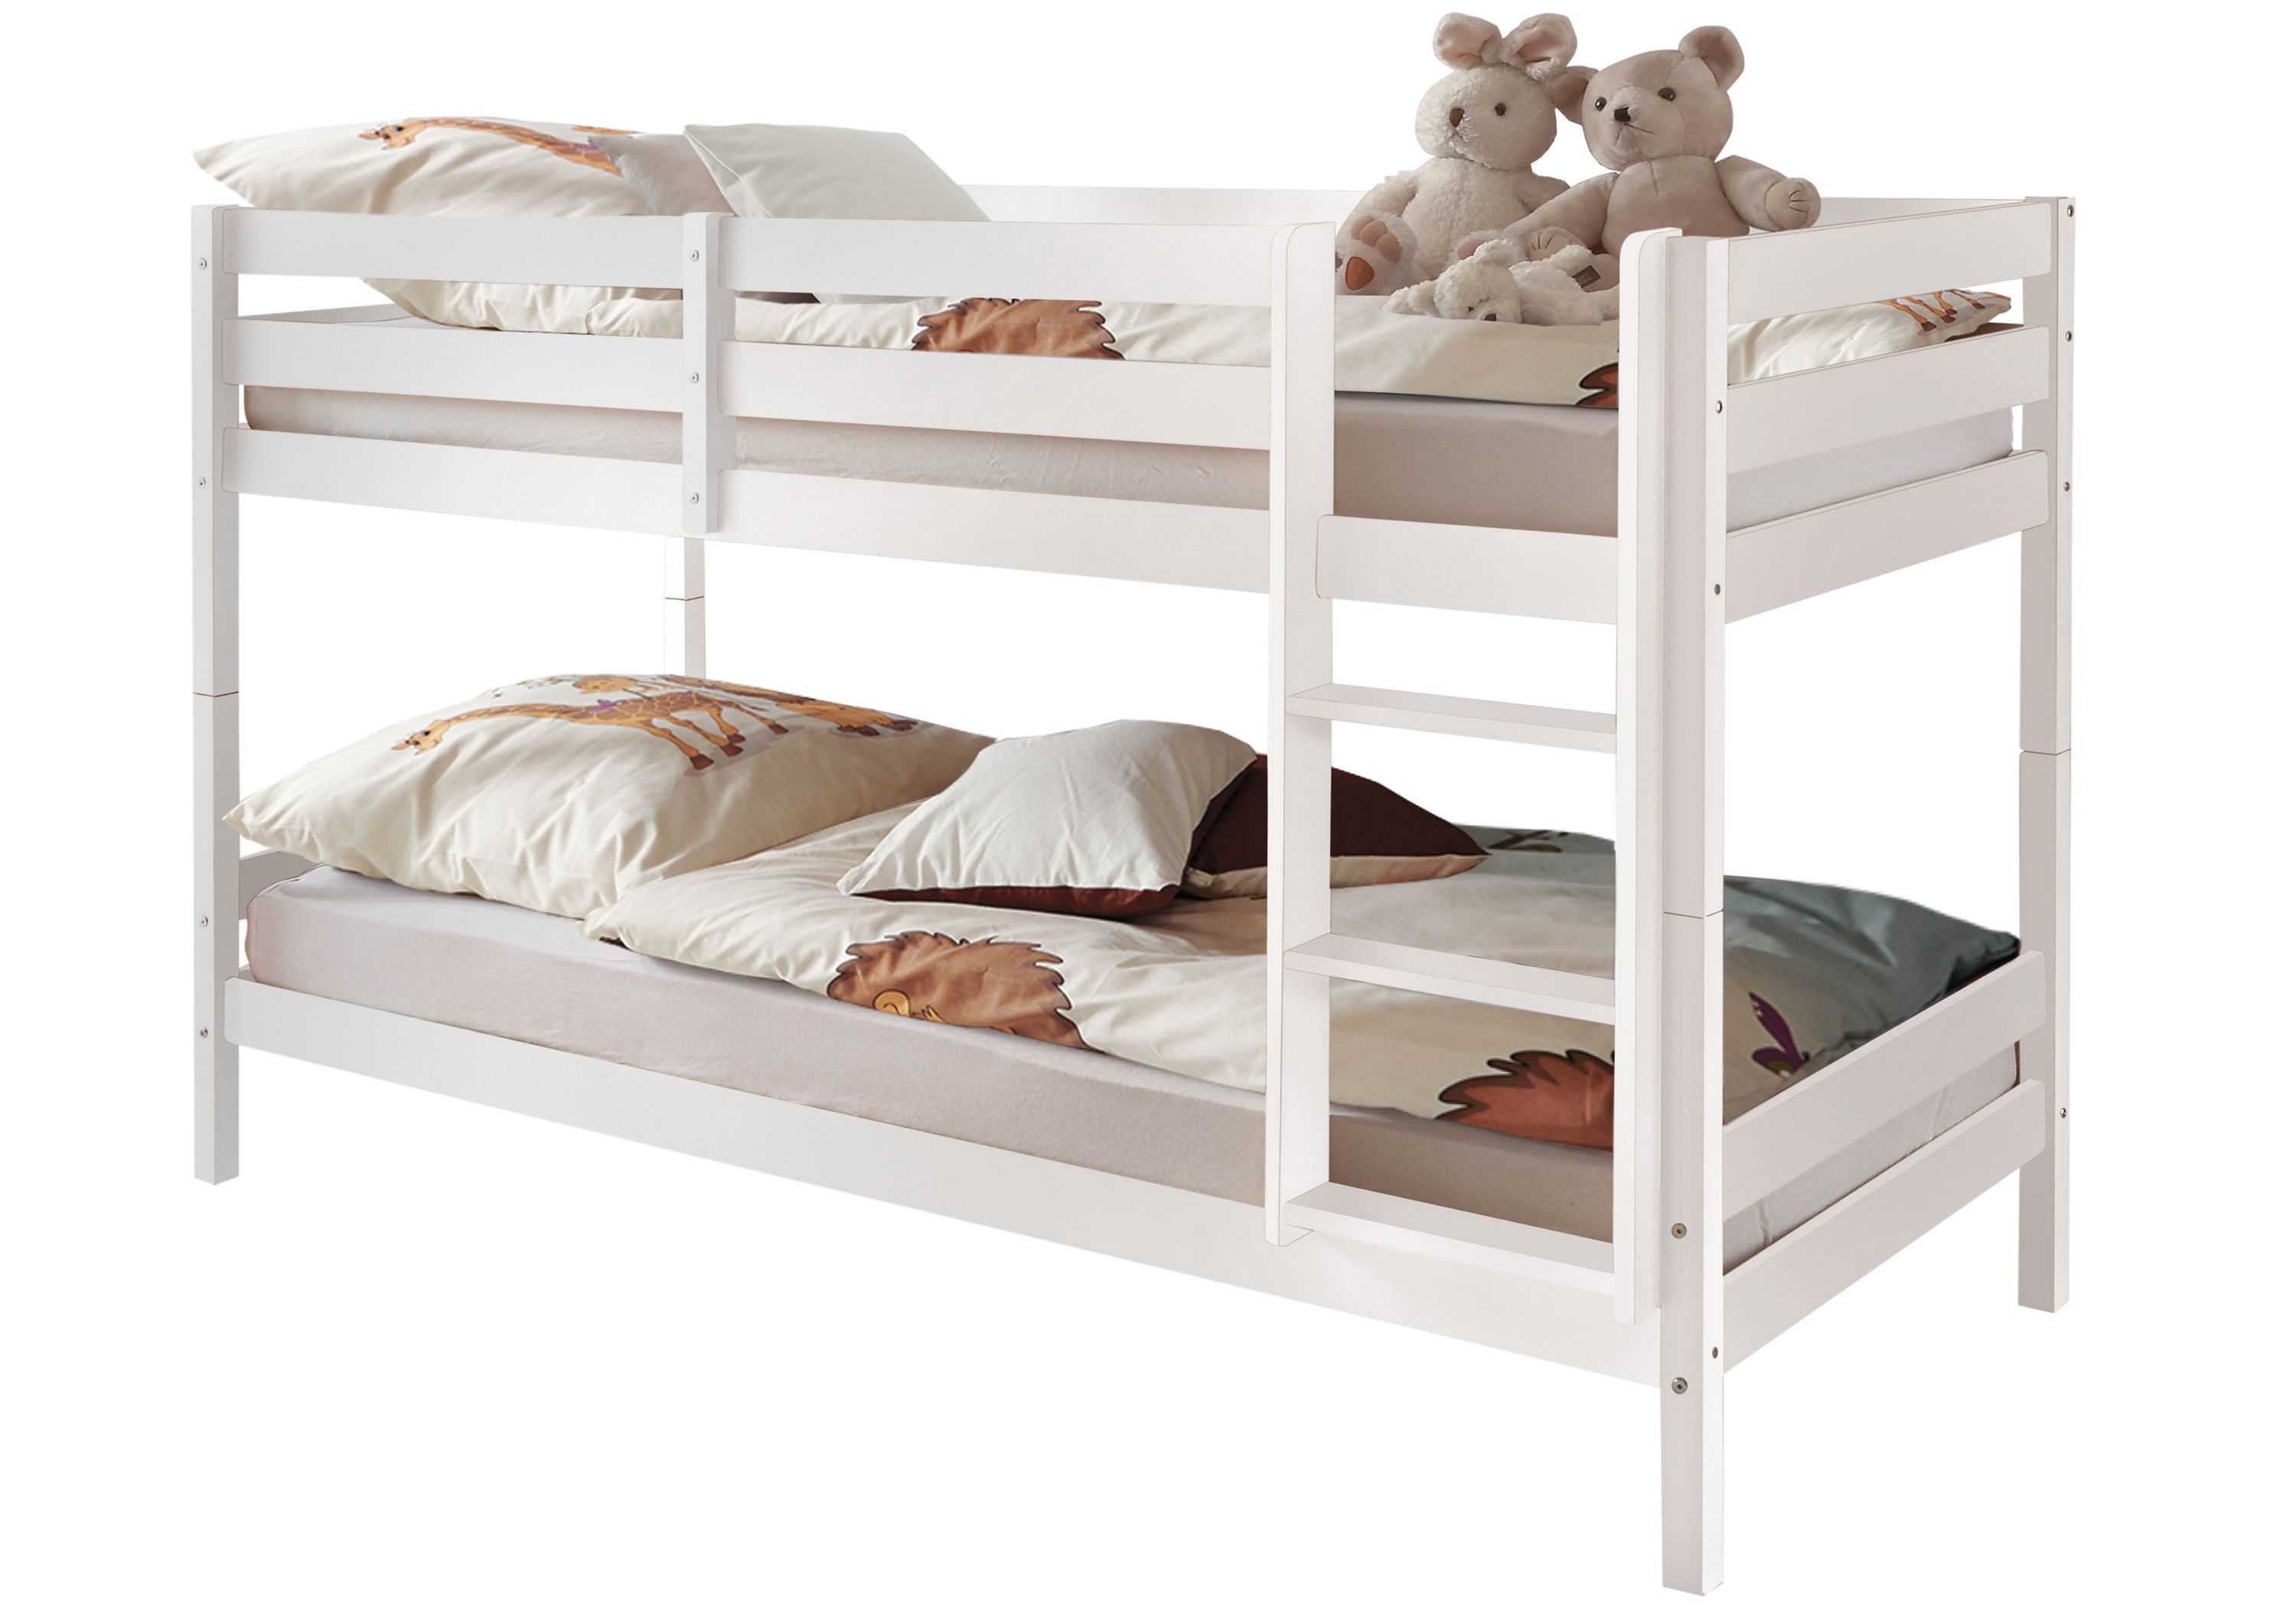 Doppelstockbett | Weiß Hochbett Kinderbett Kiefer massiv 90x200 Kinder Etagenbett eBay